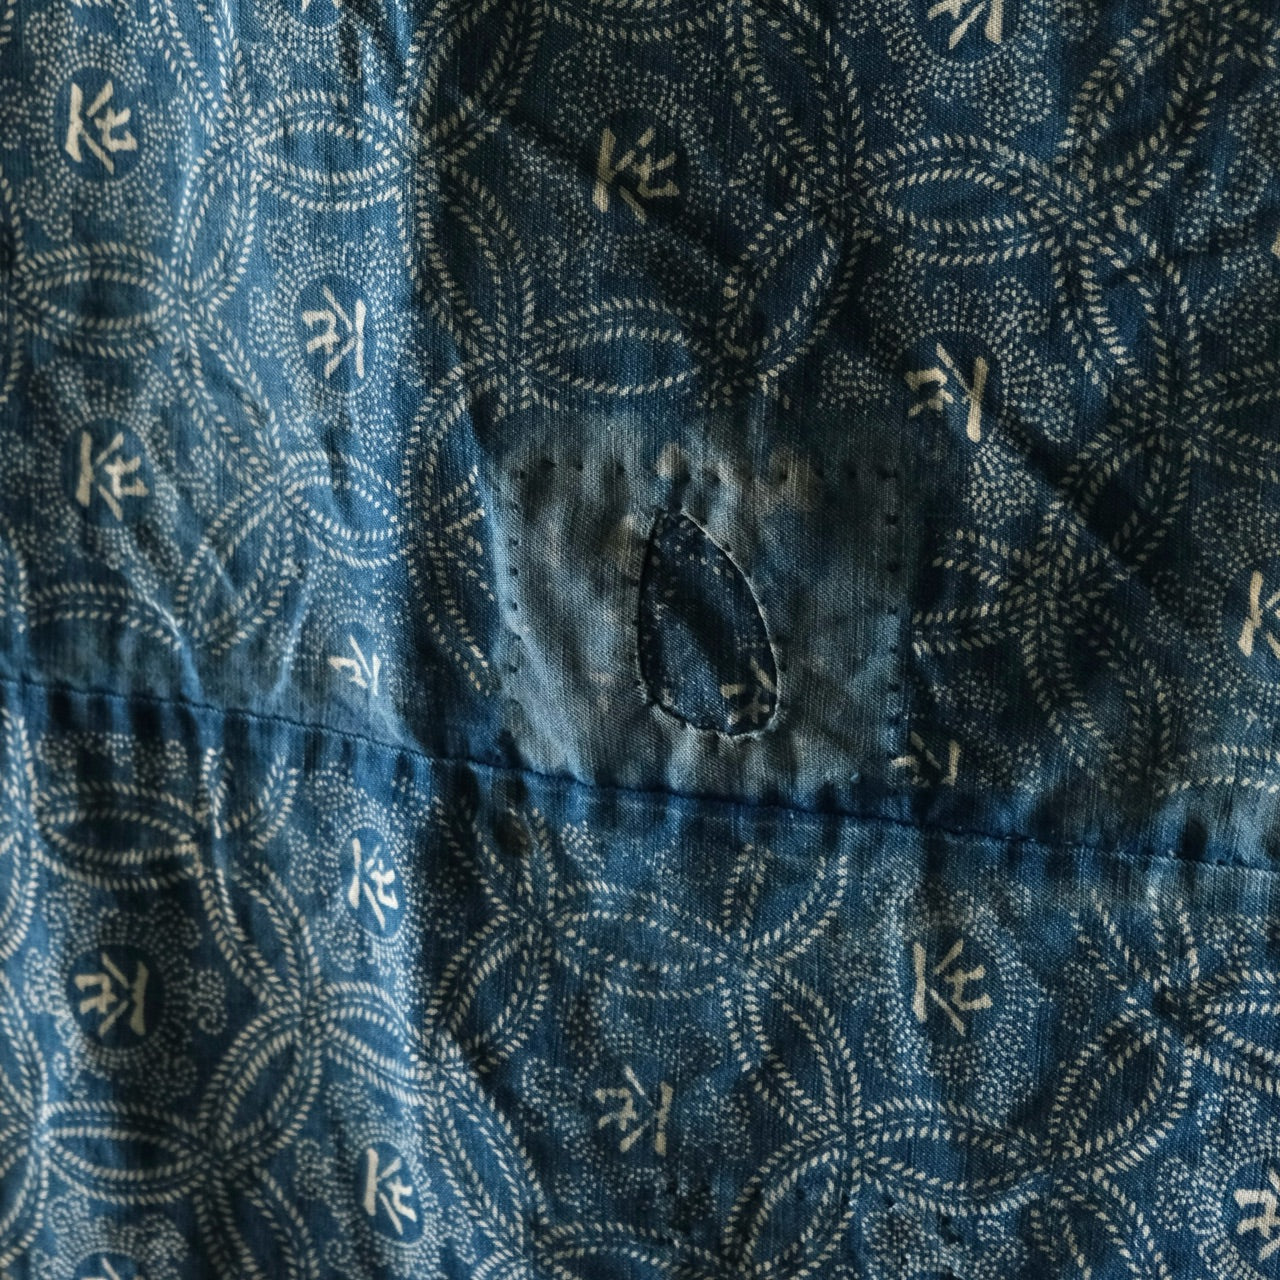 Vintage Japanese BORO Sashiko Katazome indigo dyeing (two pieces)